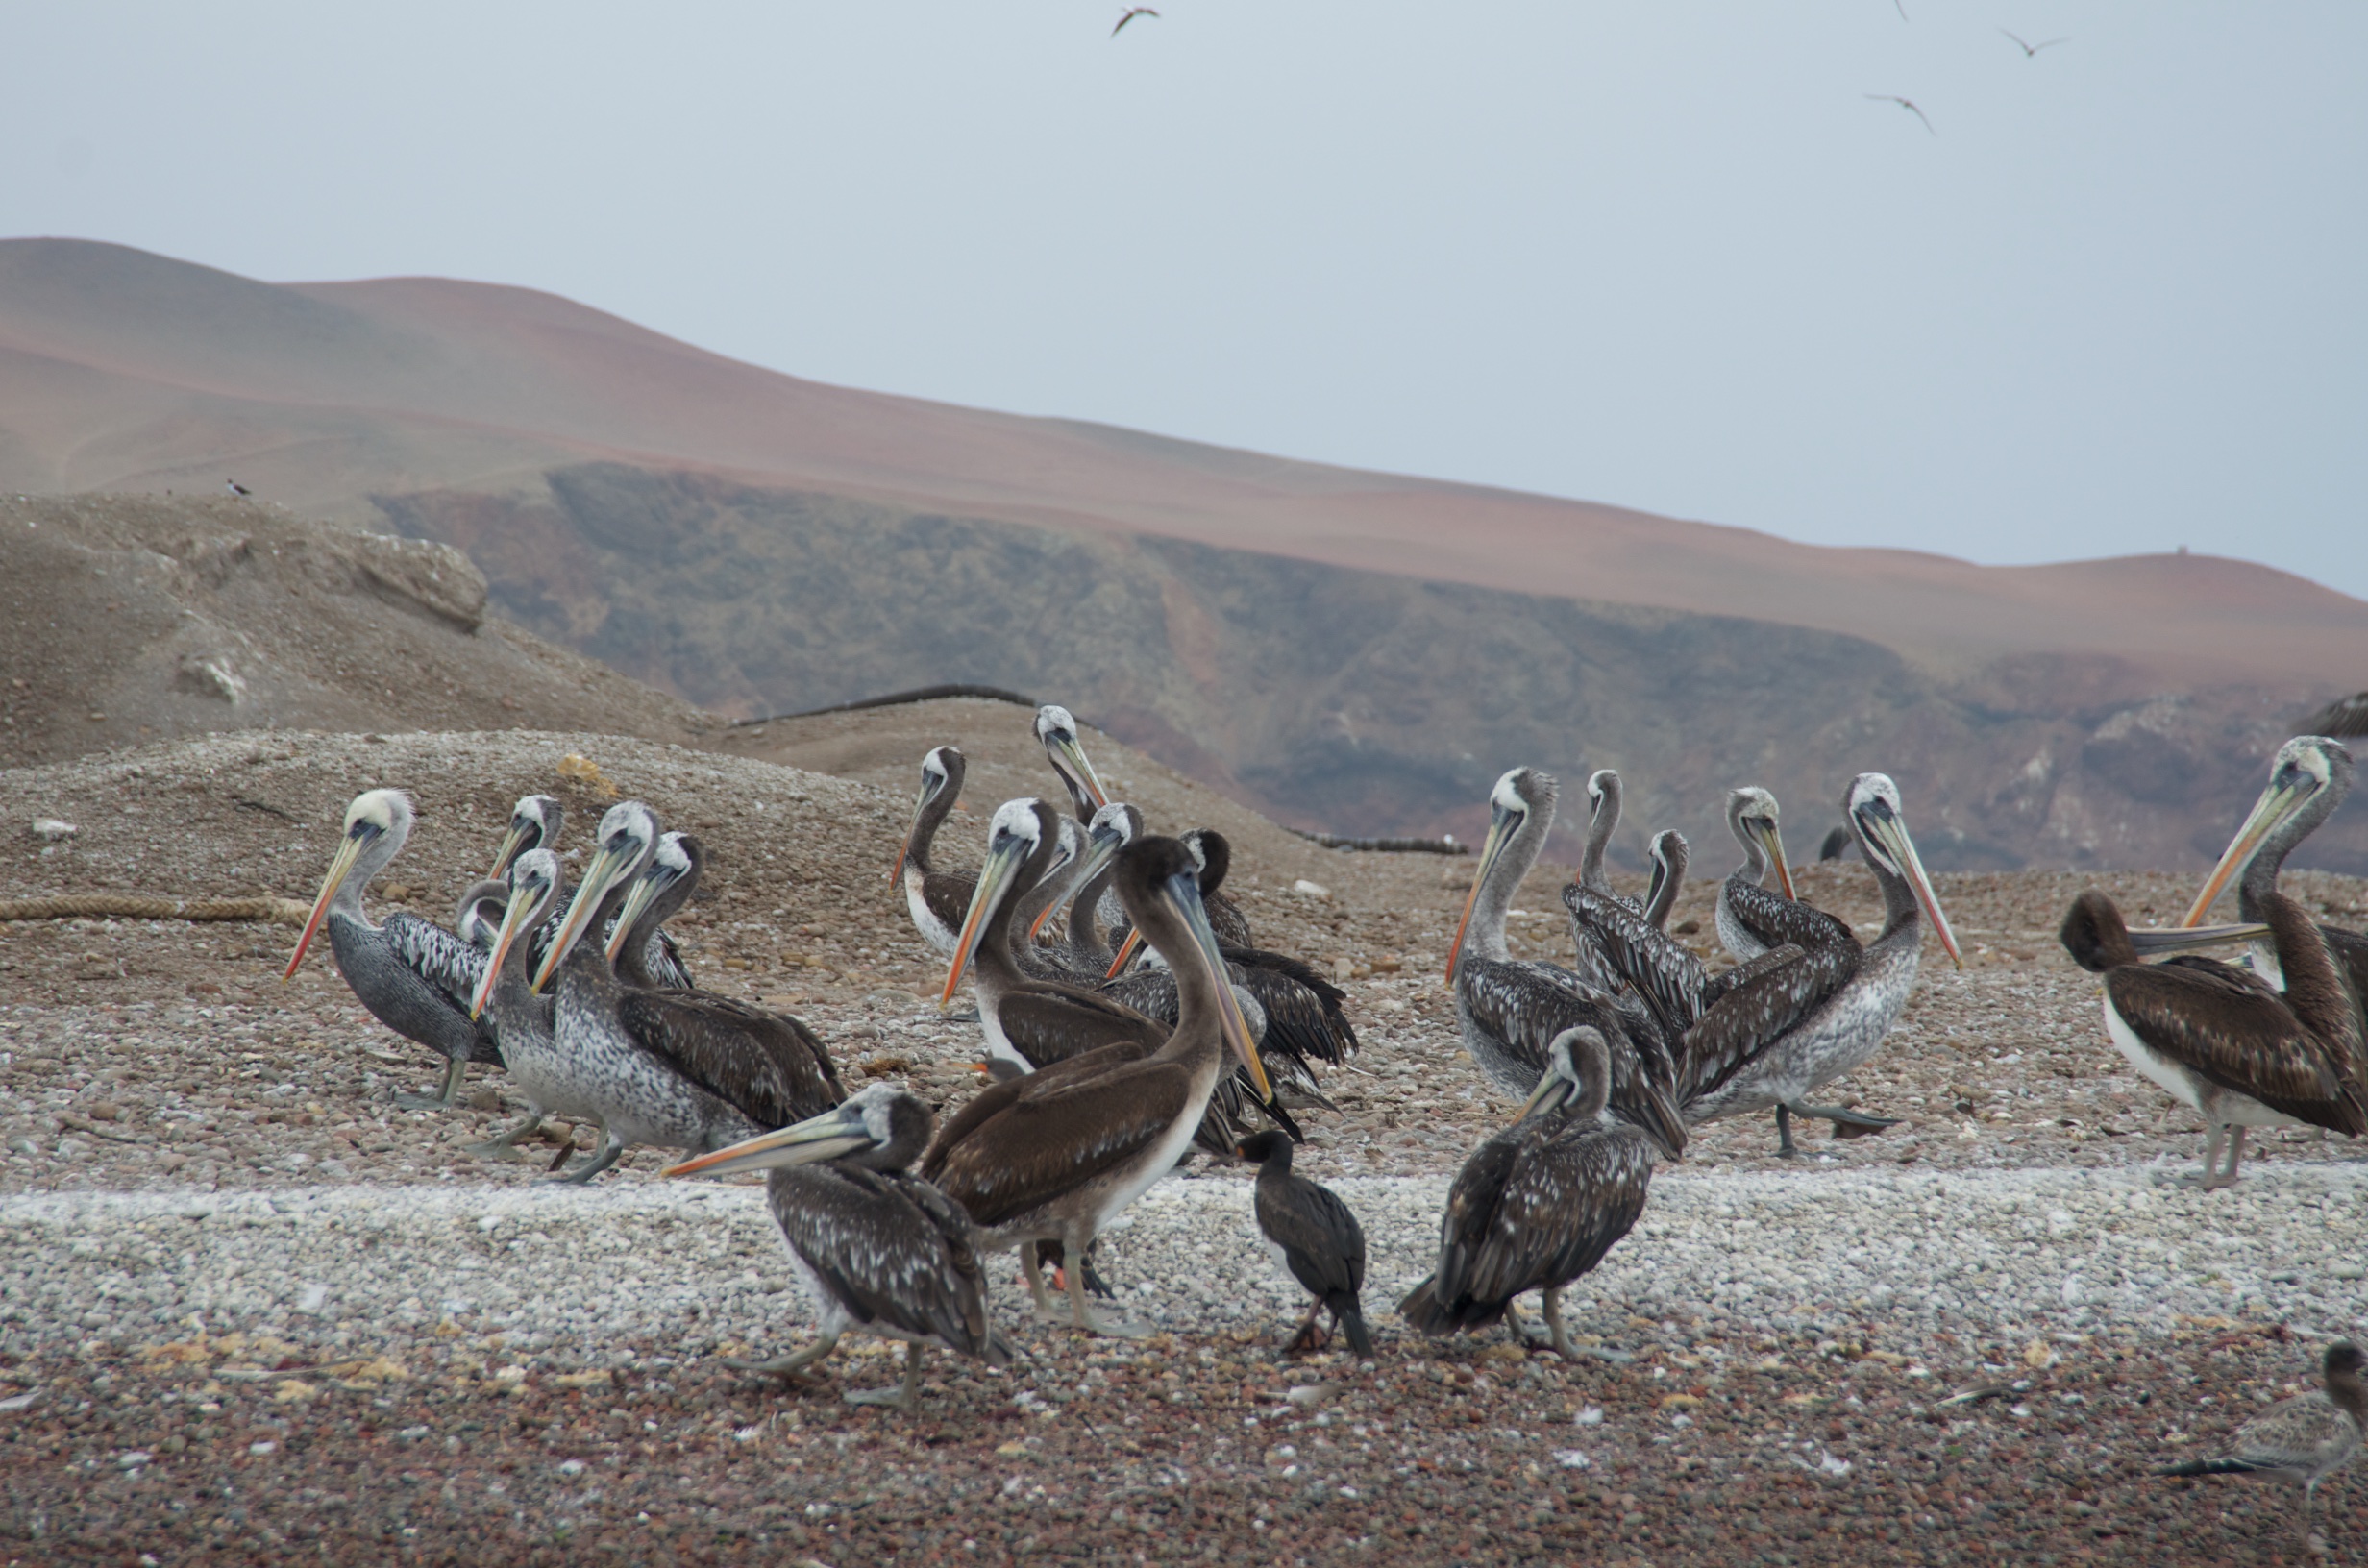  Pelicans, Ballestas Islands, Peru 